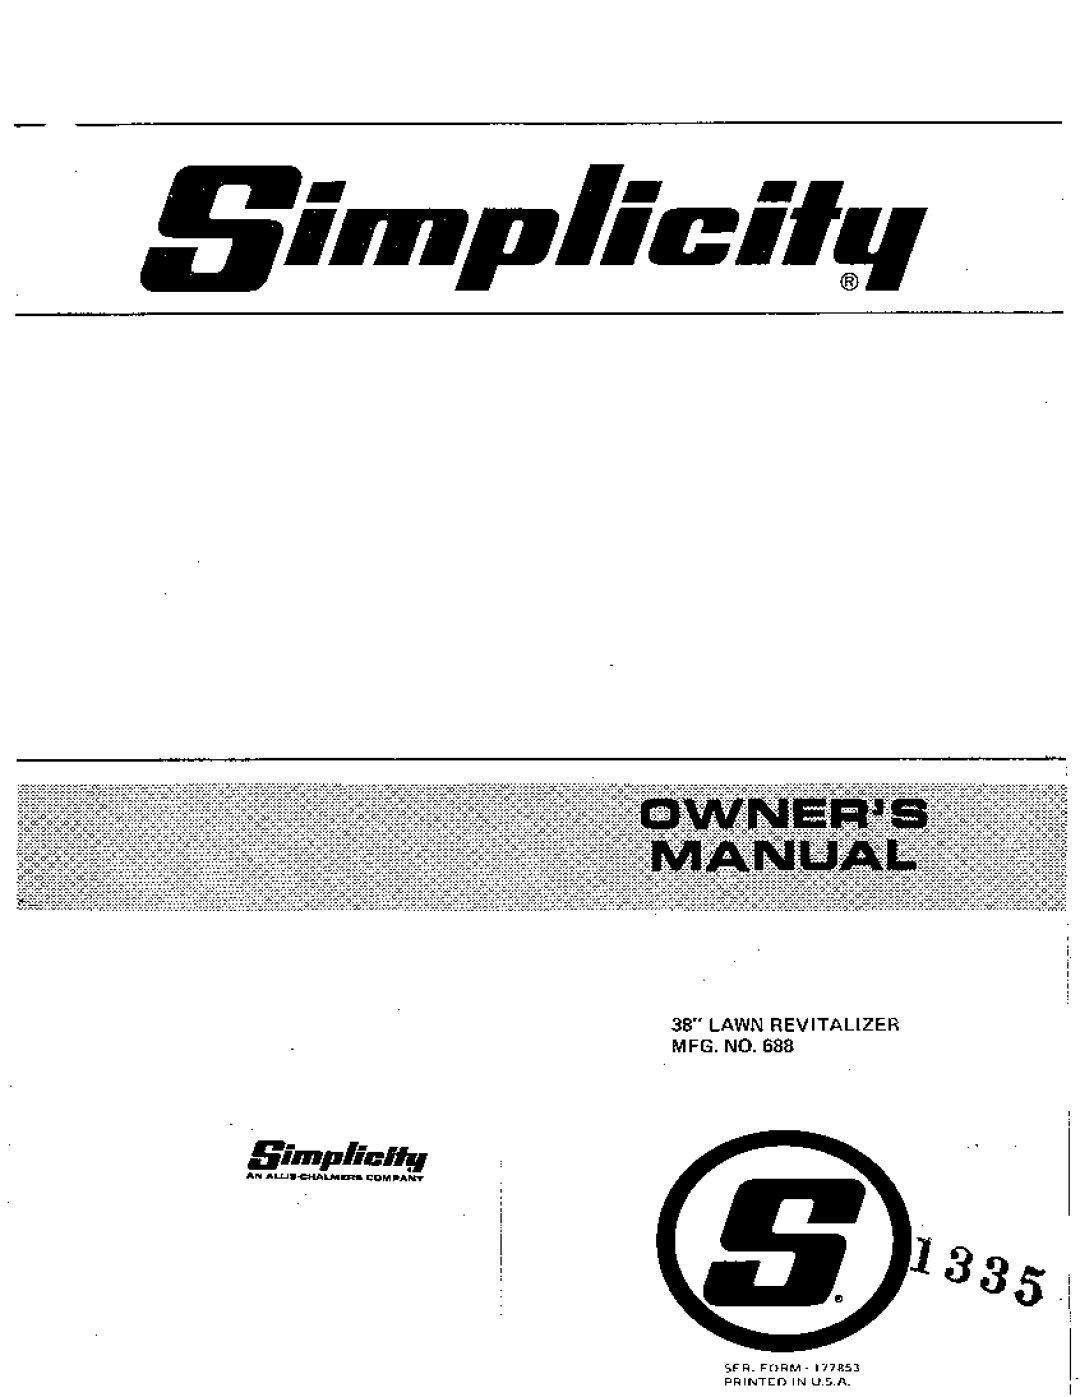 Snapper 688 manual 